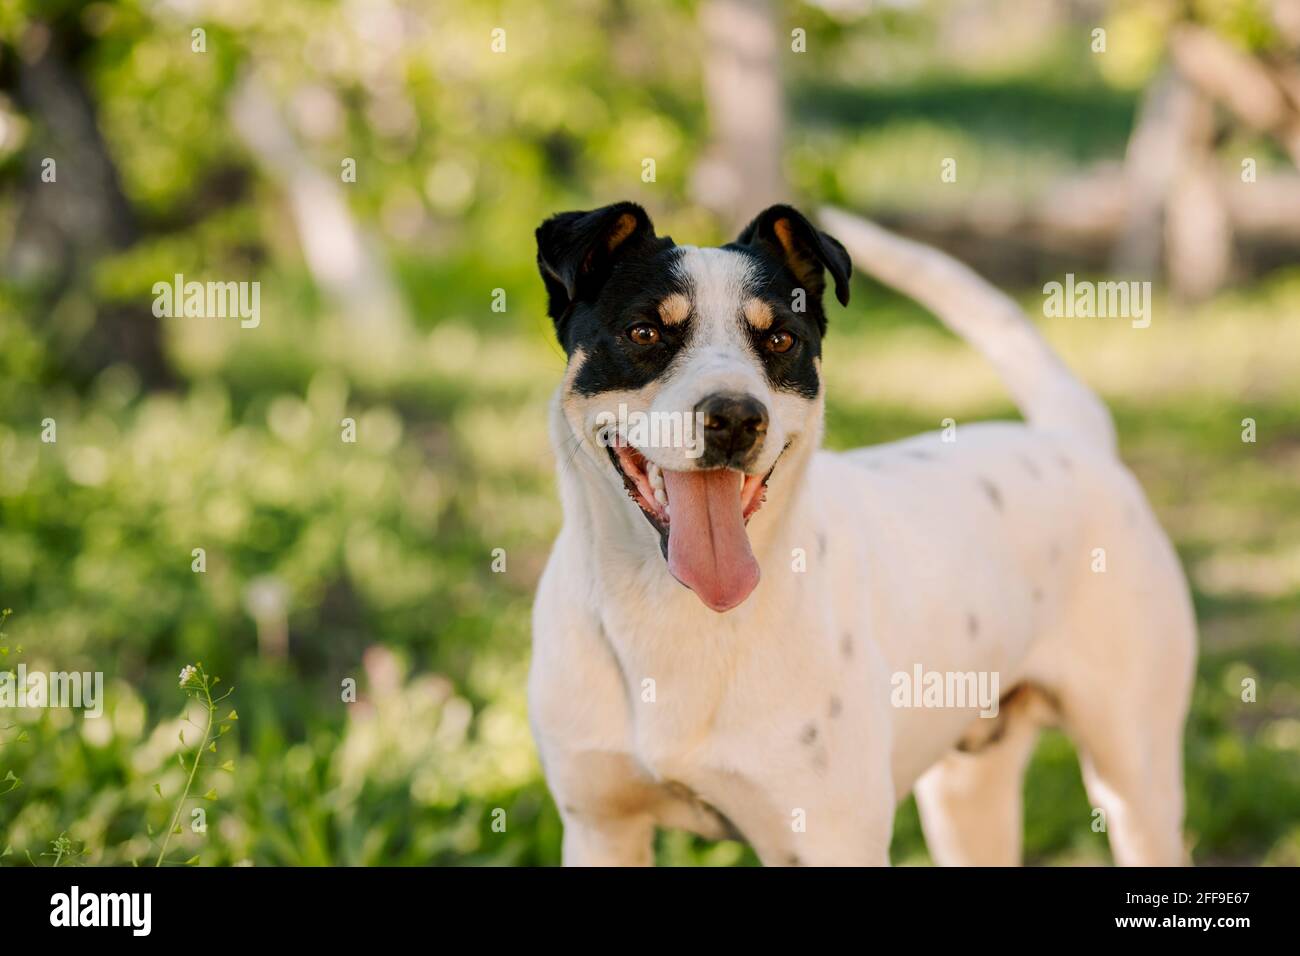 Farbenfrohes Porträt eines jungen weißen Hundes, der im Garten mit unscharfem grünen, frischen Hintergrund steht und seinen Besitzer ansieht Stockfoto